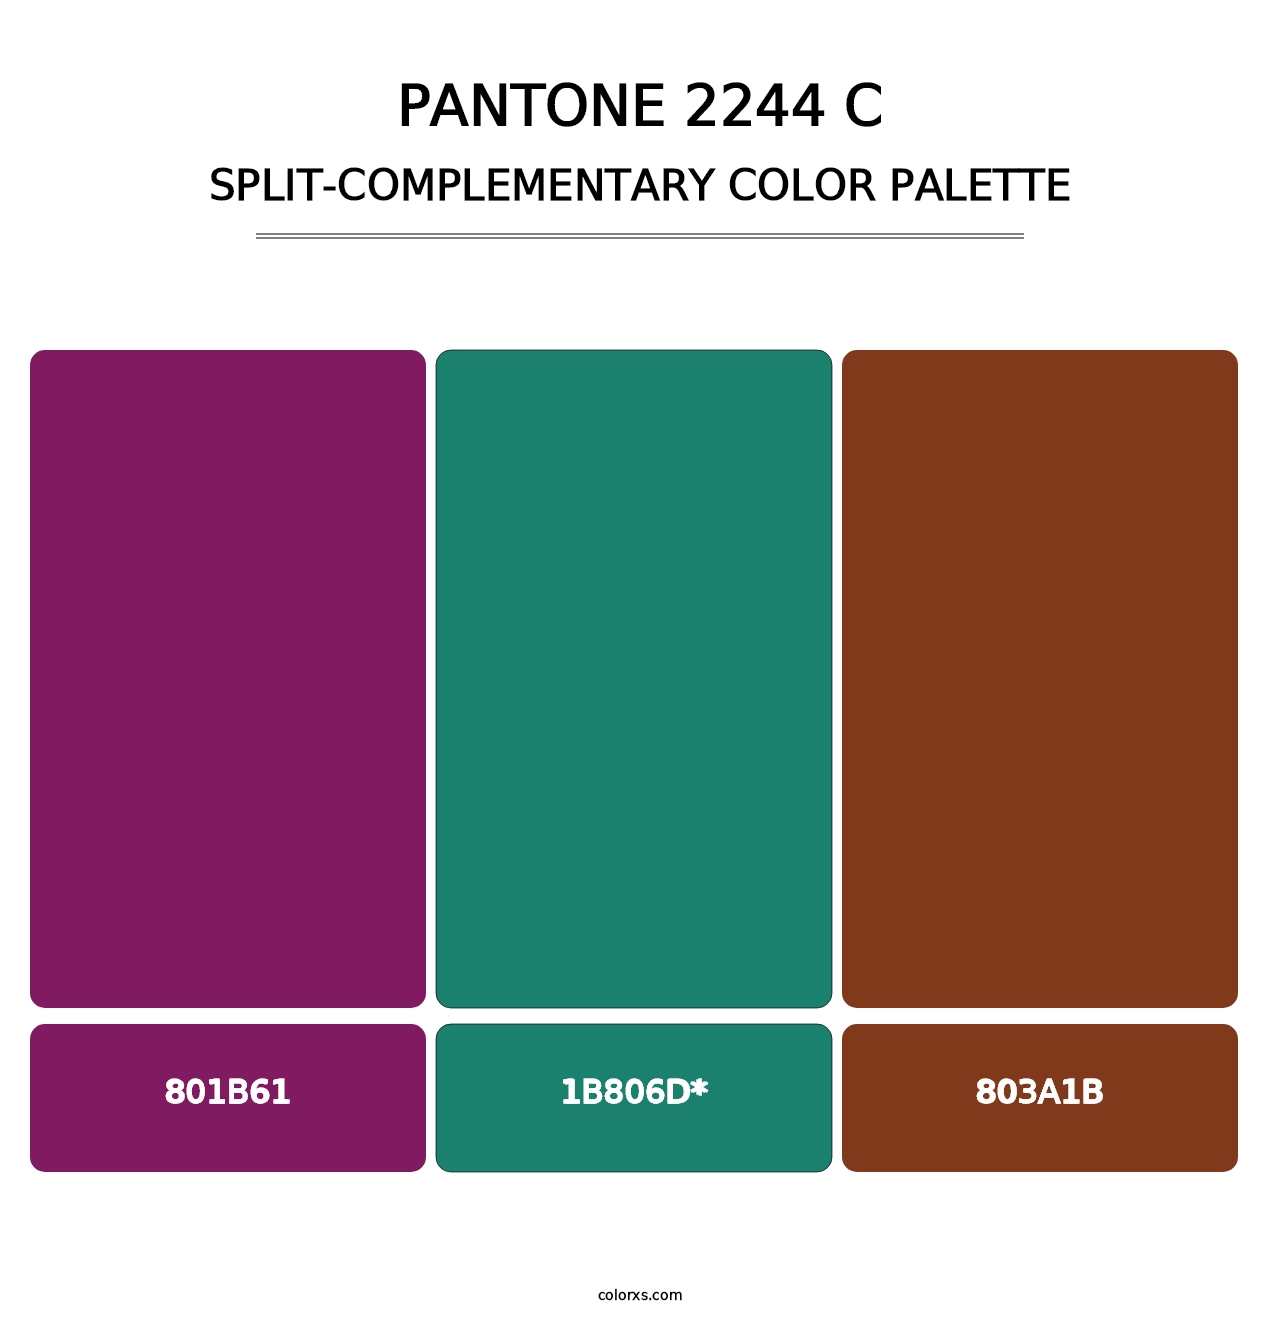 PANTONE 2244 C - Split-Complementary Color Palette